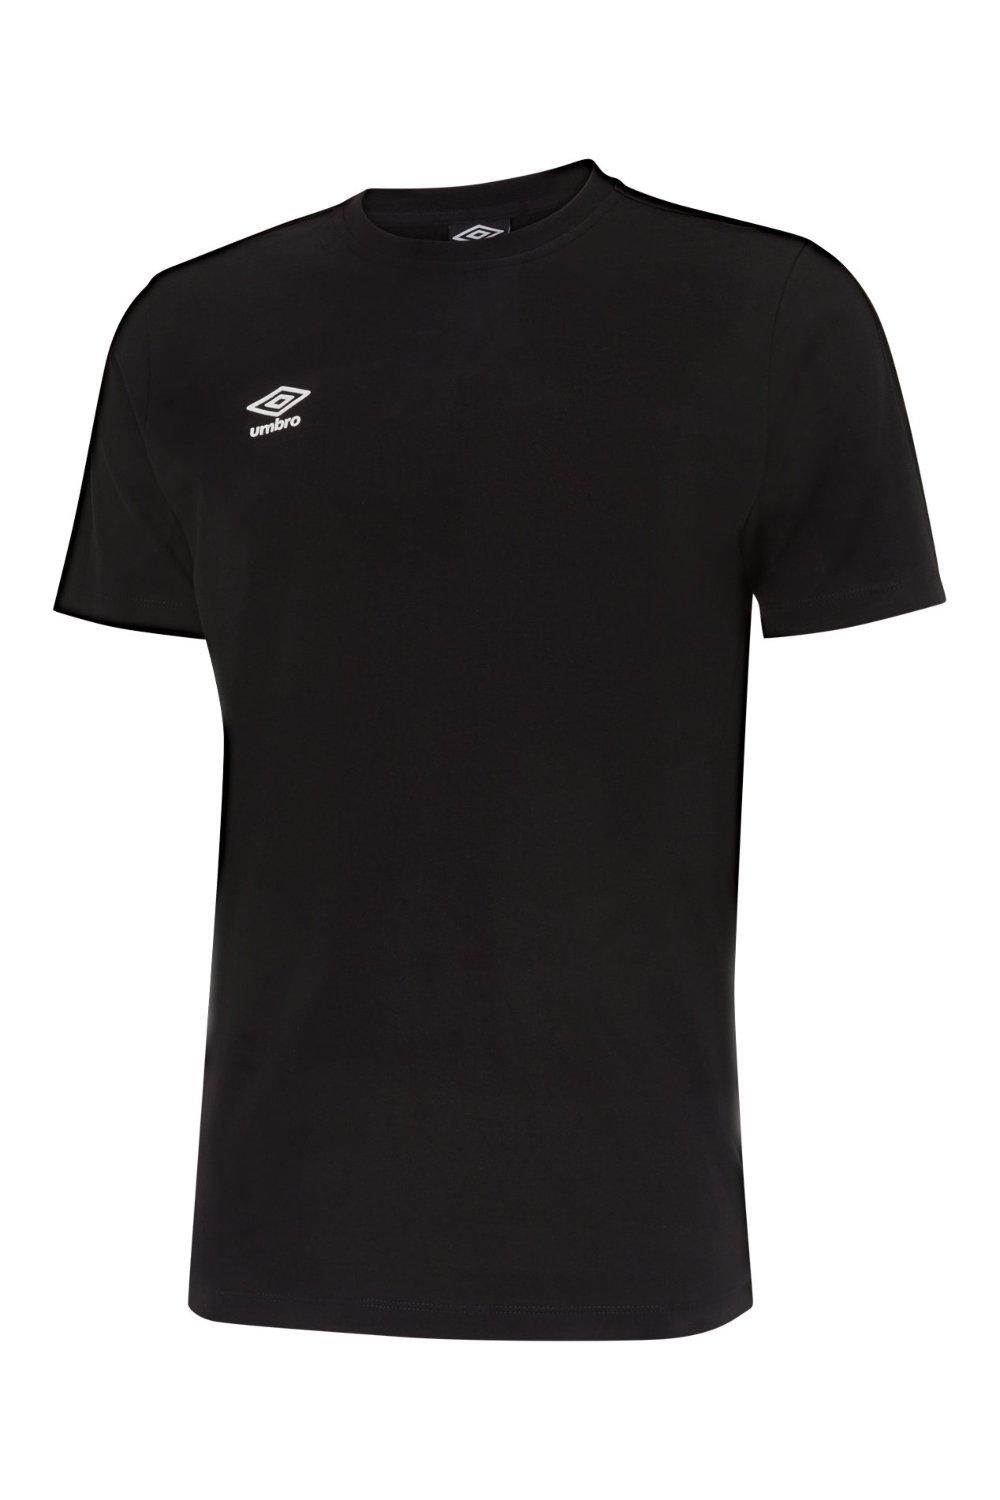 Футболка Pro с лентой Umbro, черный футболка umbro футболка тренировочная umbro pro training tee 65844u kmk размер m черный